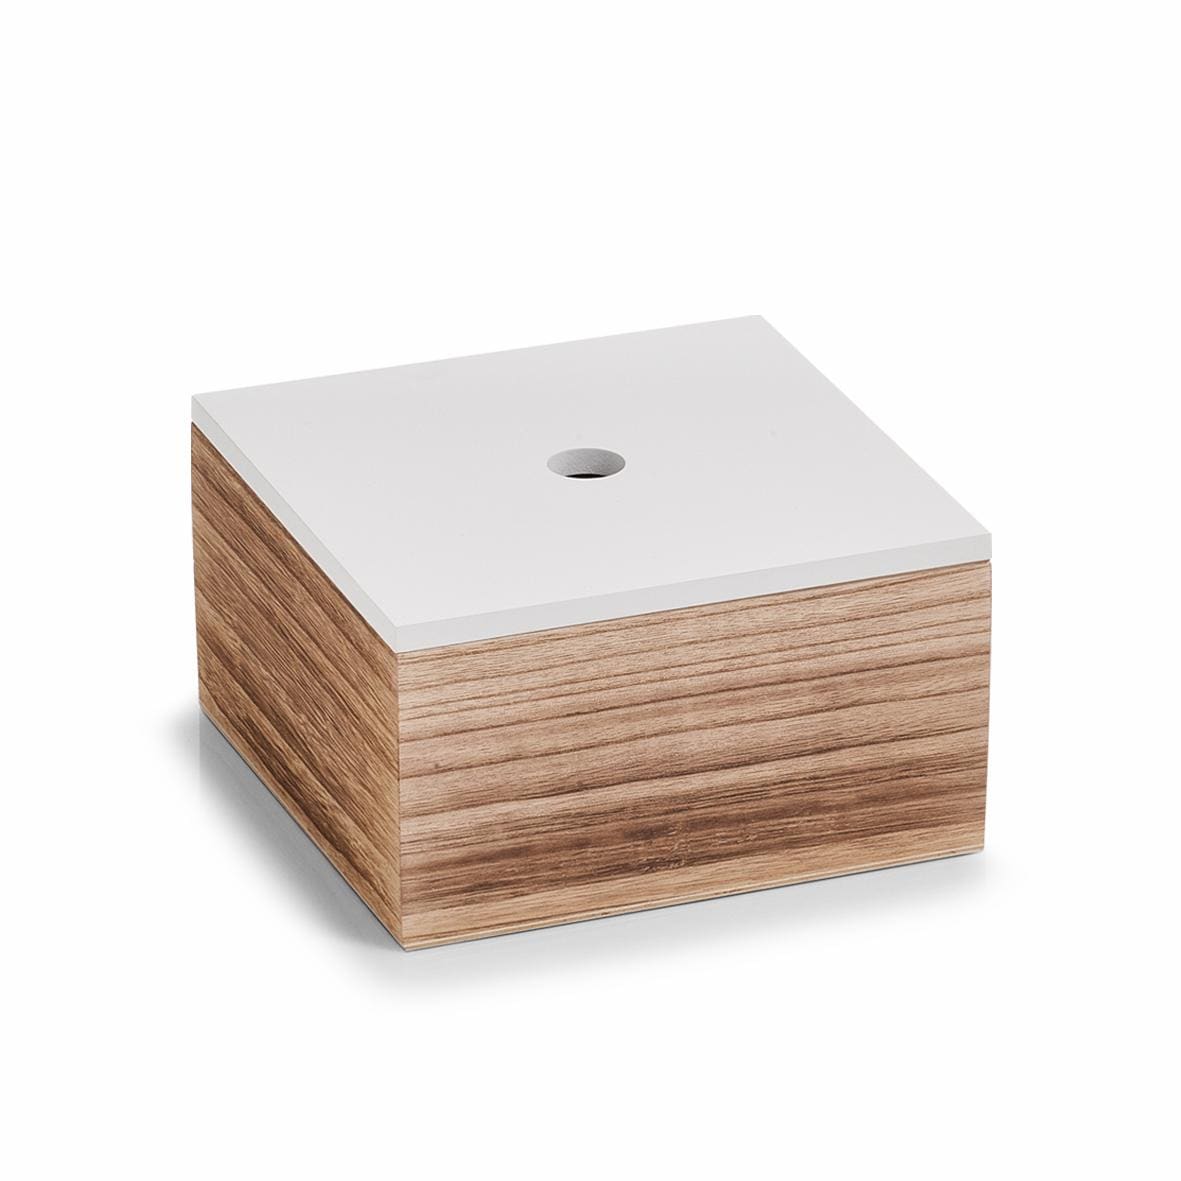 Zeller Present Aufbewahrungsbox, 3er Set, Holz, weiß/natur